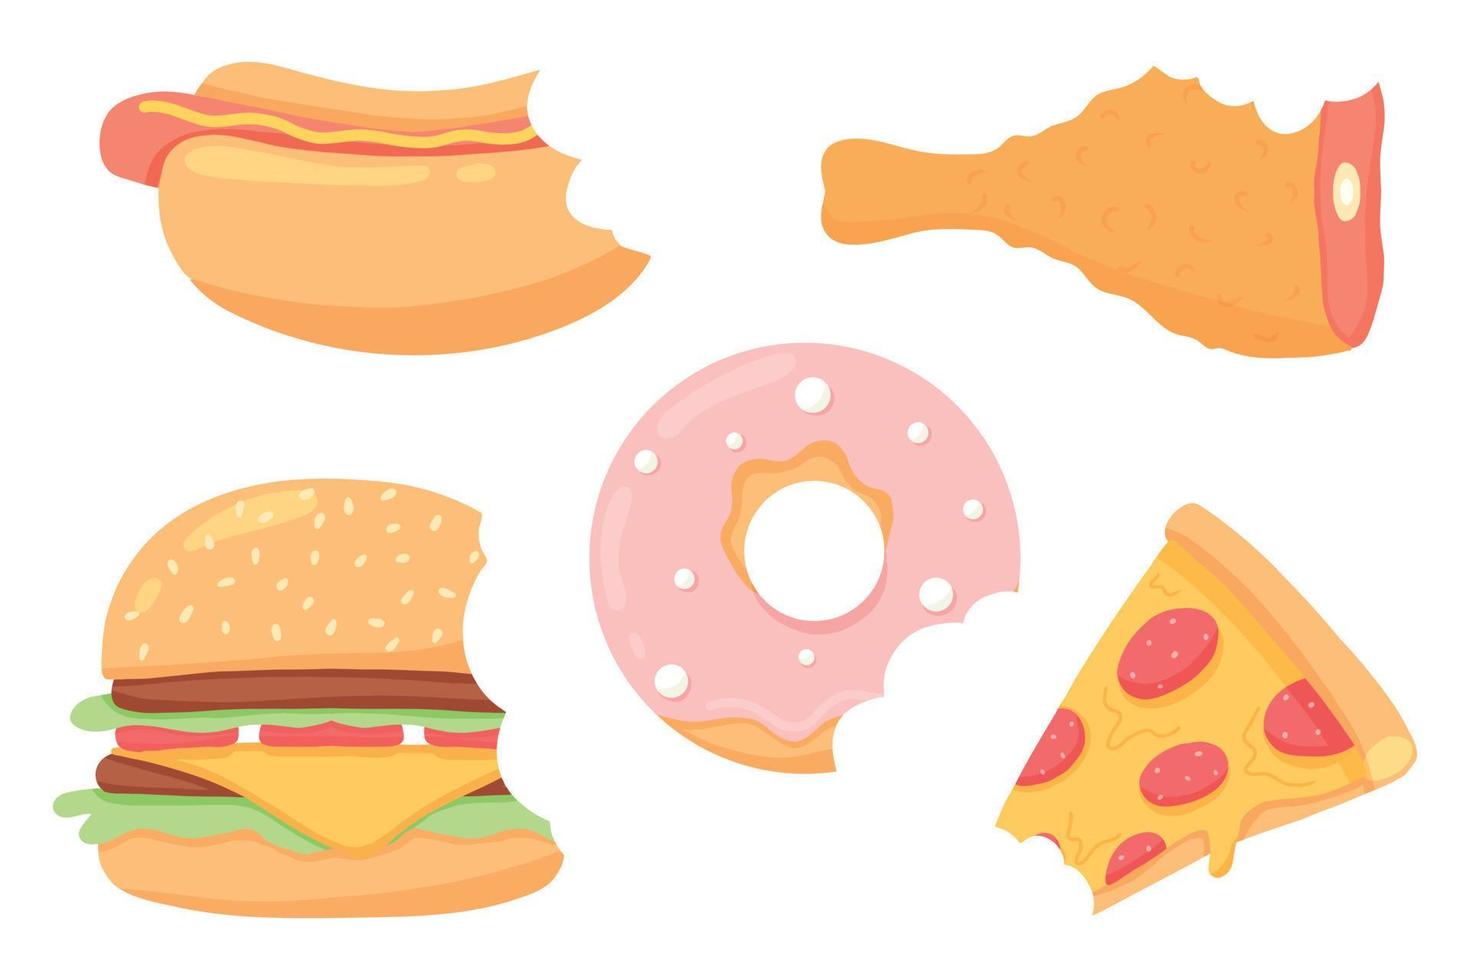 fastfood-set. verzameling van straatvoedsel. pizza, hamburger, hotdog, frietjes, donut, drink.vector set. clip art fastfood maaltijd. vector